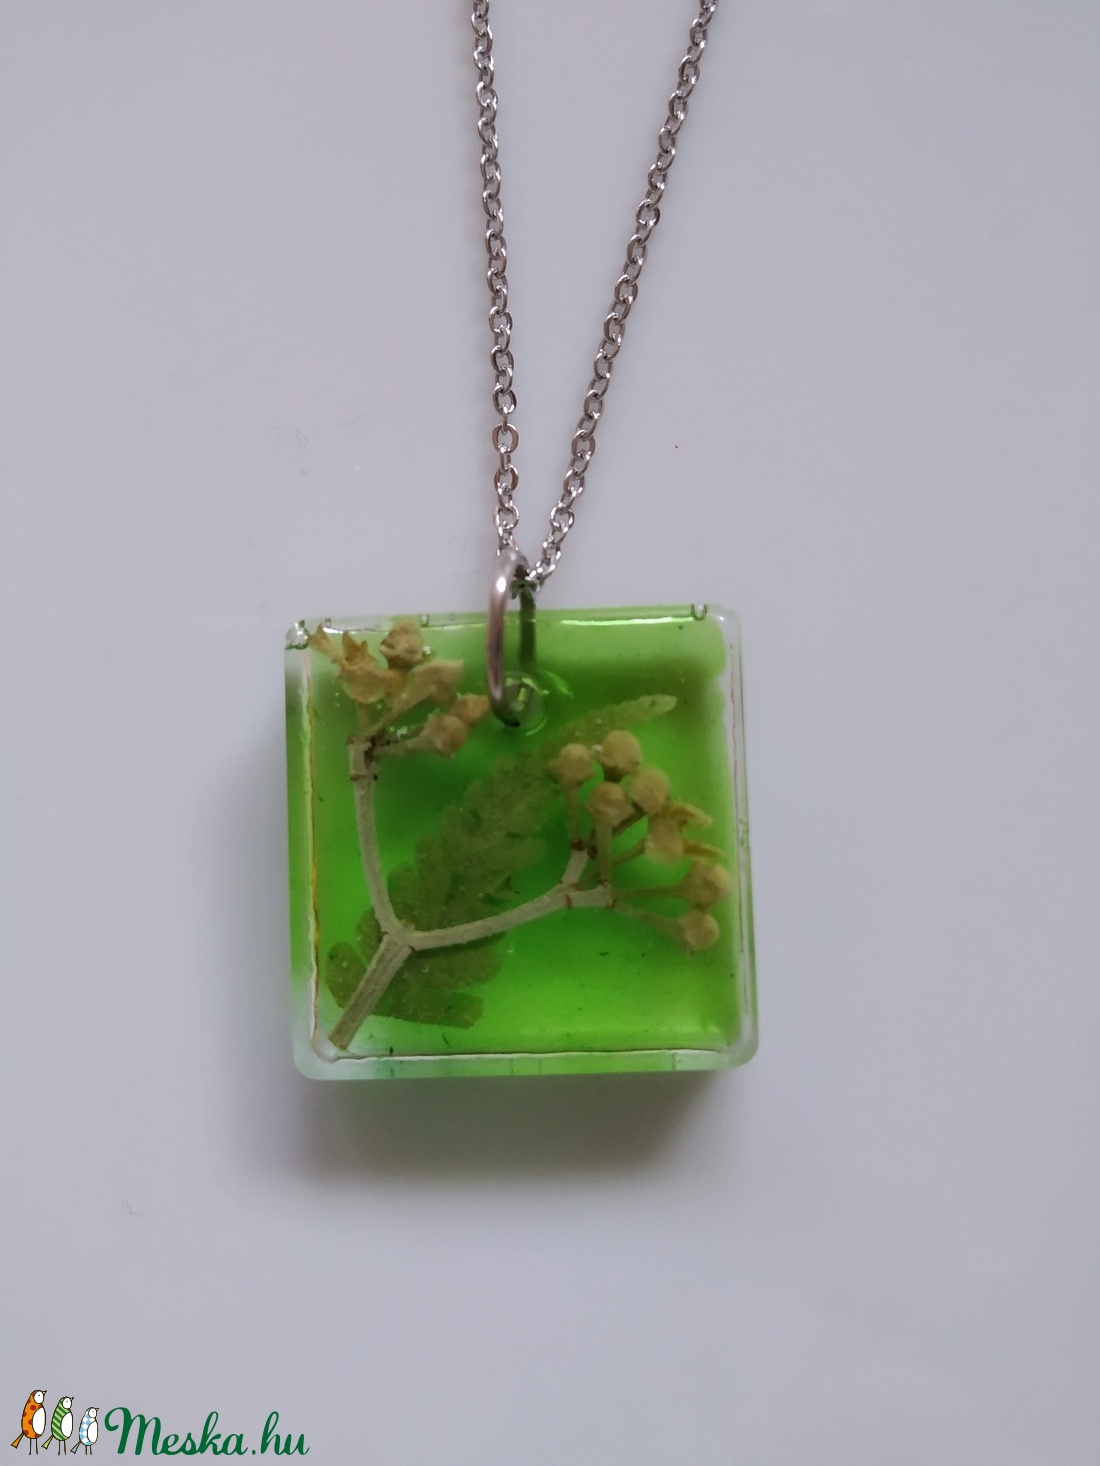 Zöld műgyanta medál nemesacél láncon - műgyanta ékszer antiallergén nyakláncon - páfrány és bogyó négyzet alakú medálban - ékszer - nyaklánc - medálos nyaklánc - Meska.hu